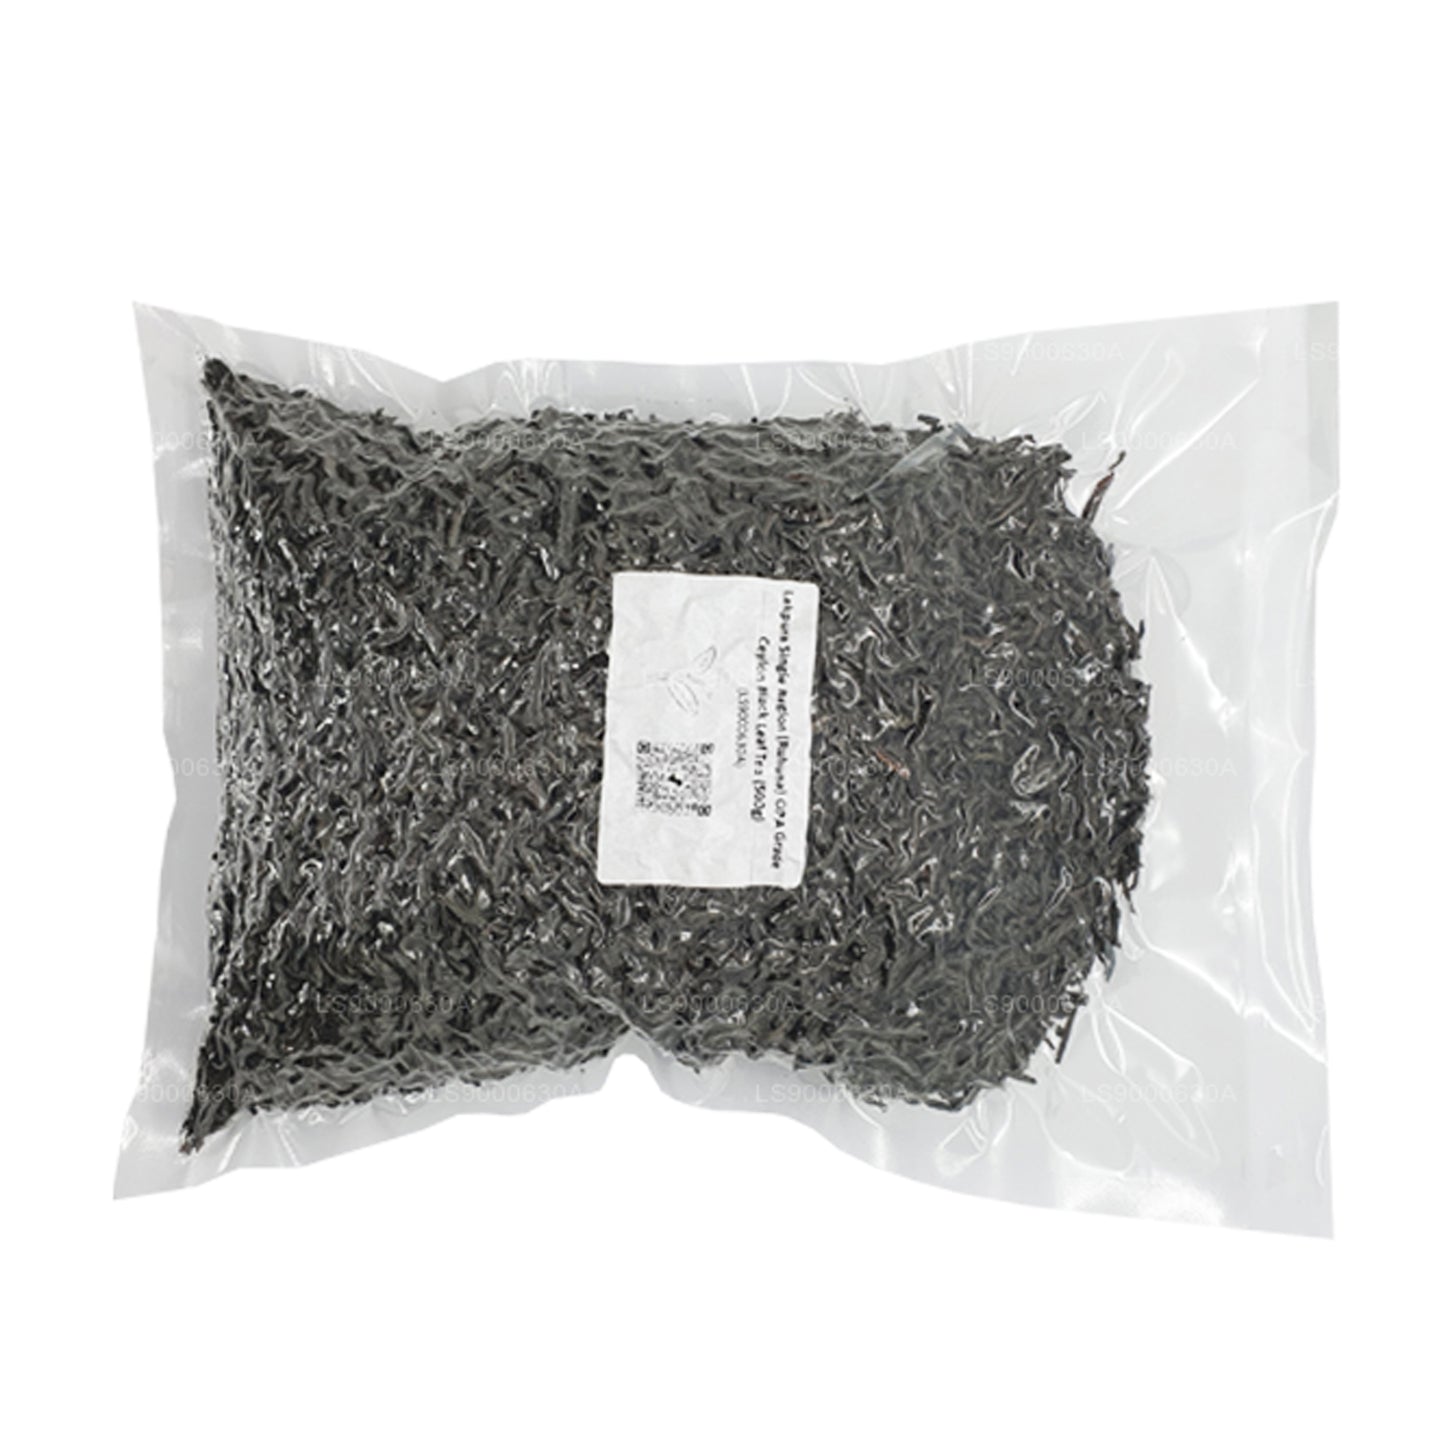 Lakpura Single Region (Ruhuna) OPA Grade Ceylon Black Leaf Tea Pack